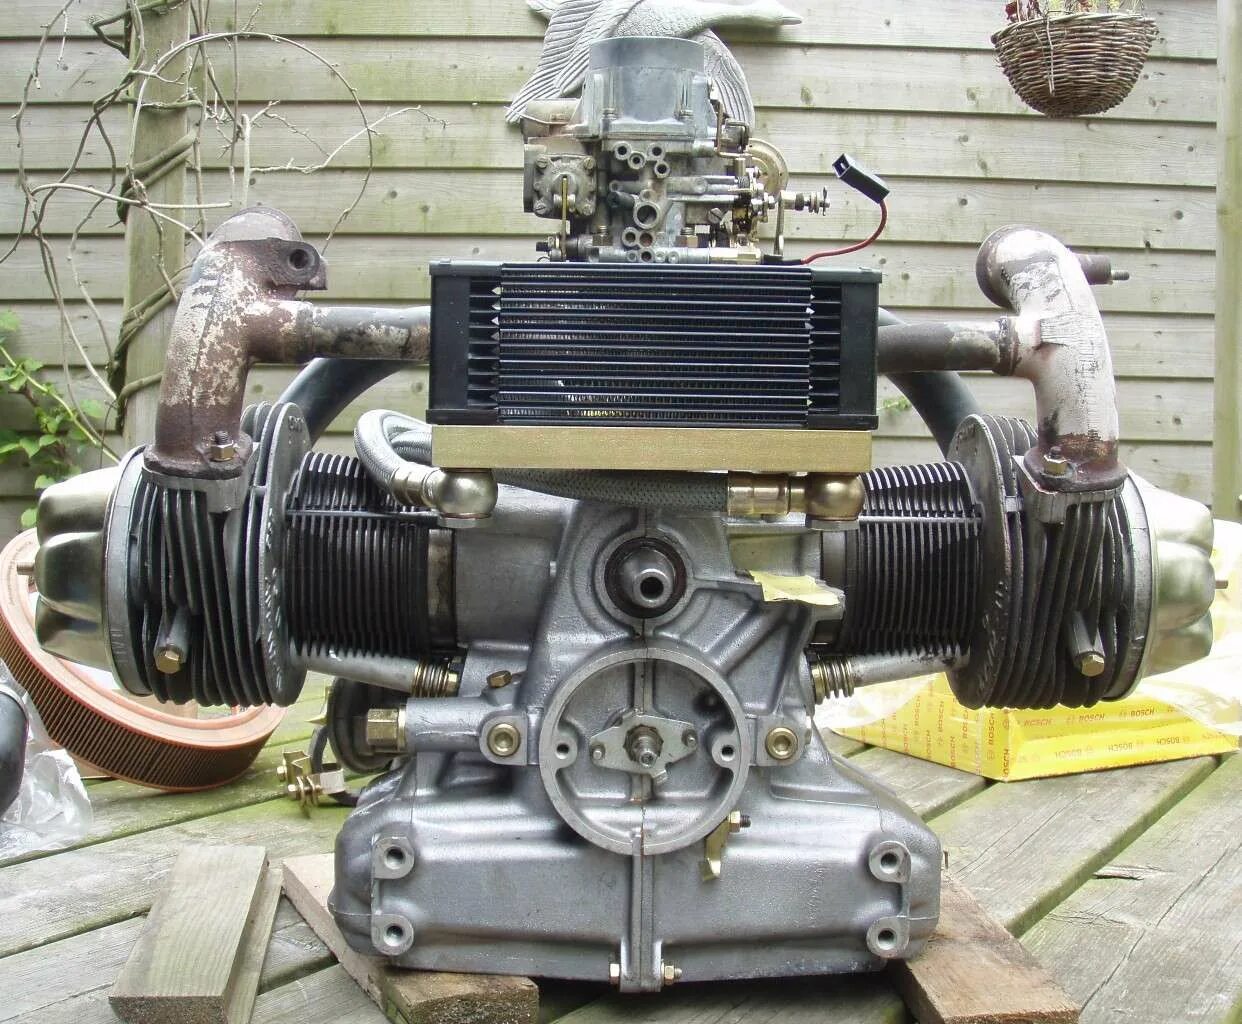 Мотор св. Citroen 2cv двигатель. Оппозитный двигатель Ситроен 2cv. Citroen 2cv engine. Двухцилиндровый оппозитный двигатель Ситроен 2cv.